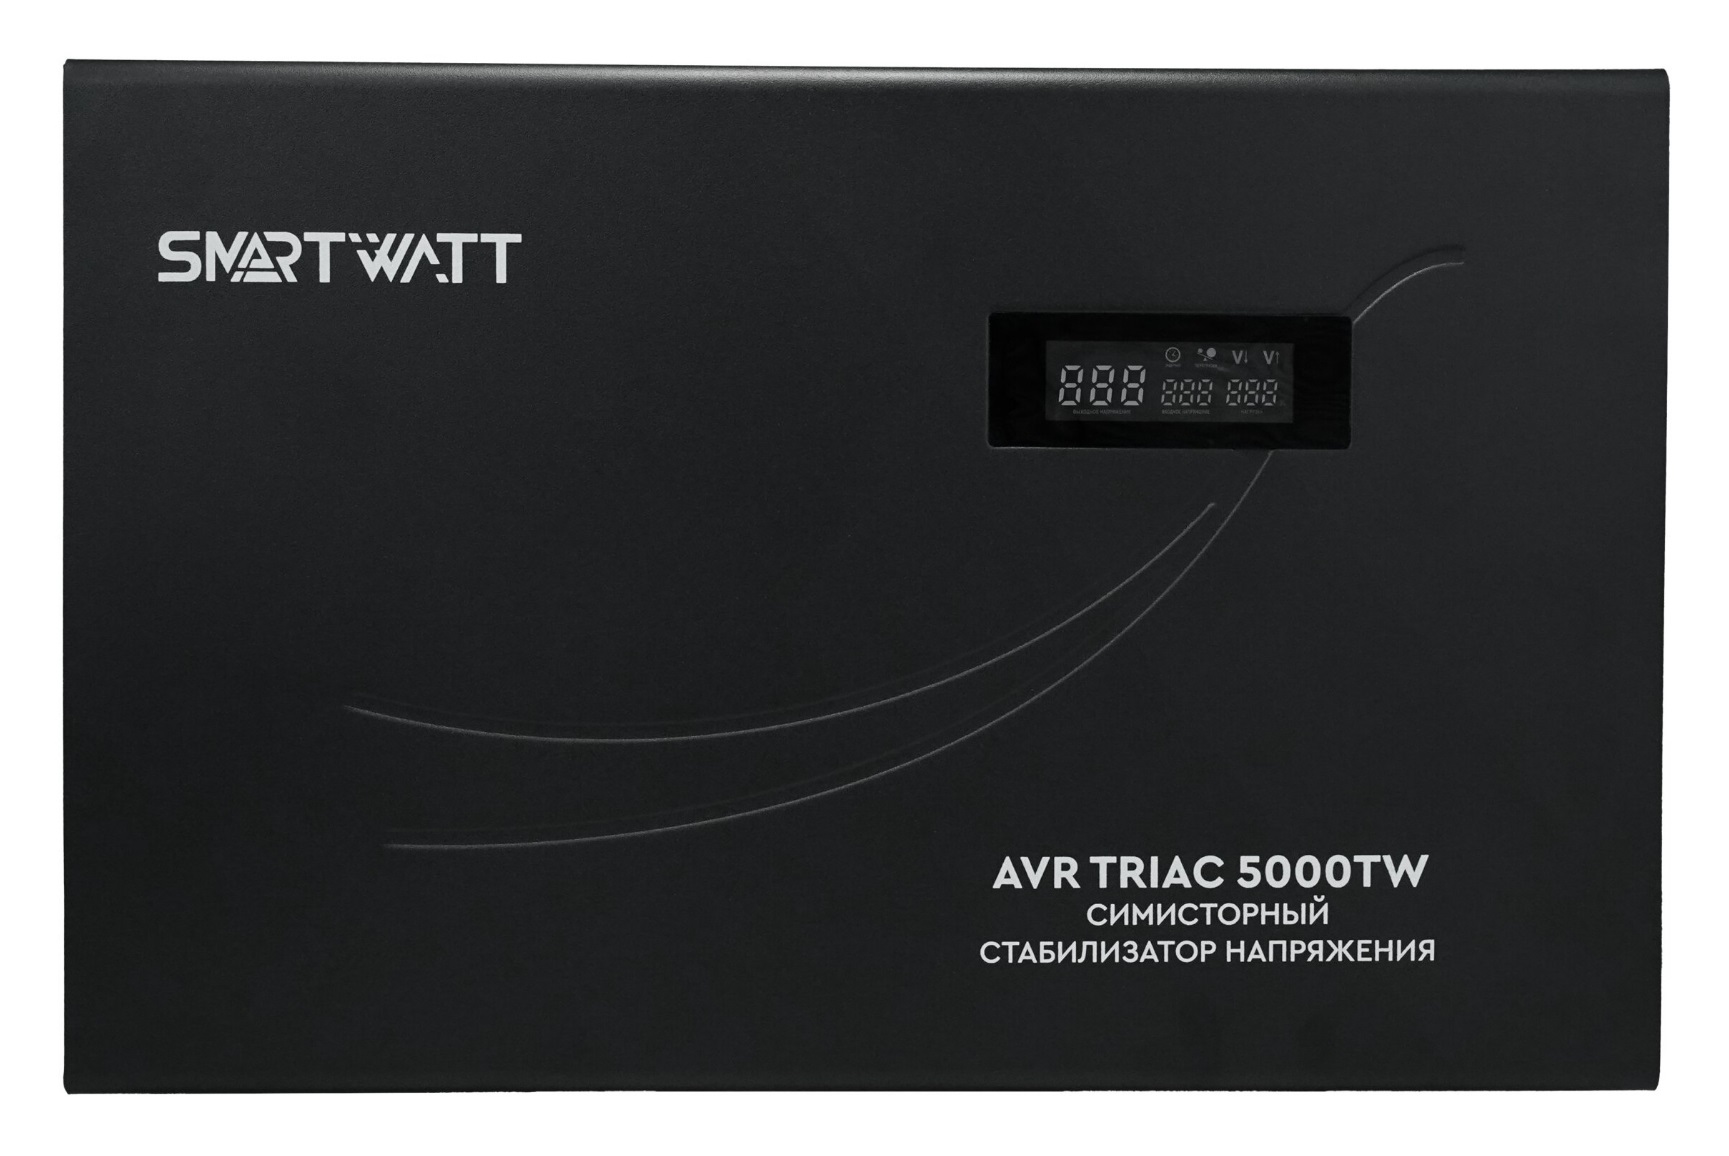 Симисторный стабилизатор напряжения SMARTWATT AVR TRIAC 5000TW